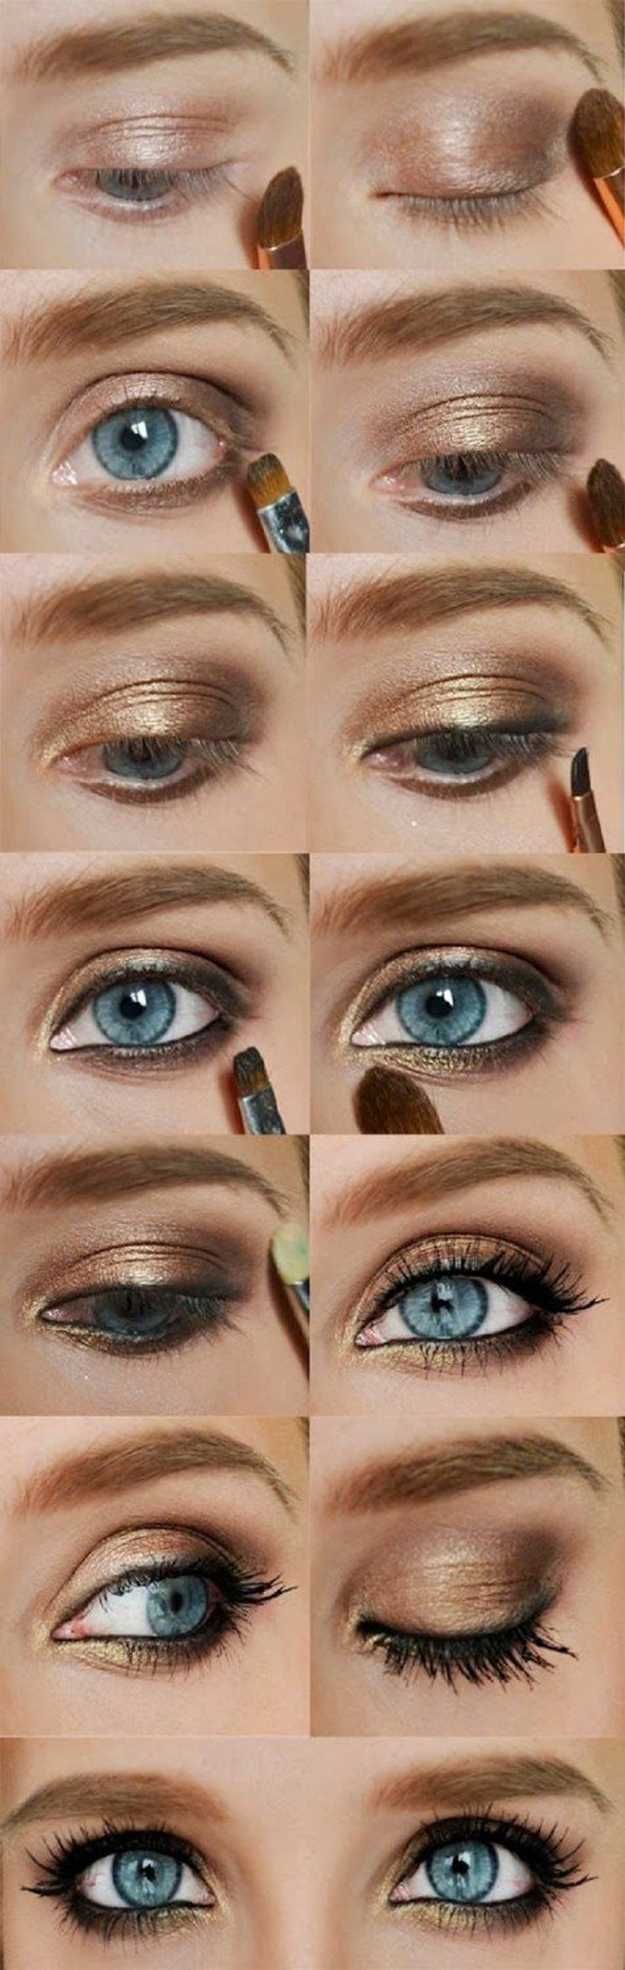 Gold Eyeshadow | Colorful Eyeshadow Tutorials | Makeup Tutorials...